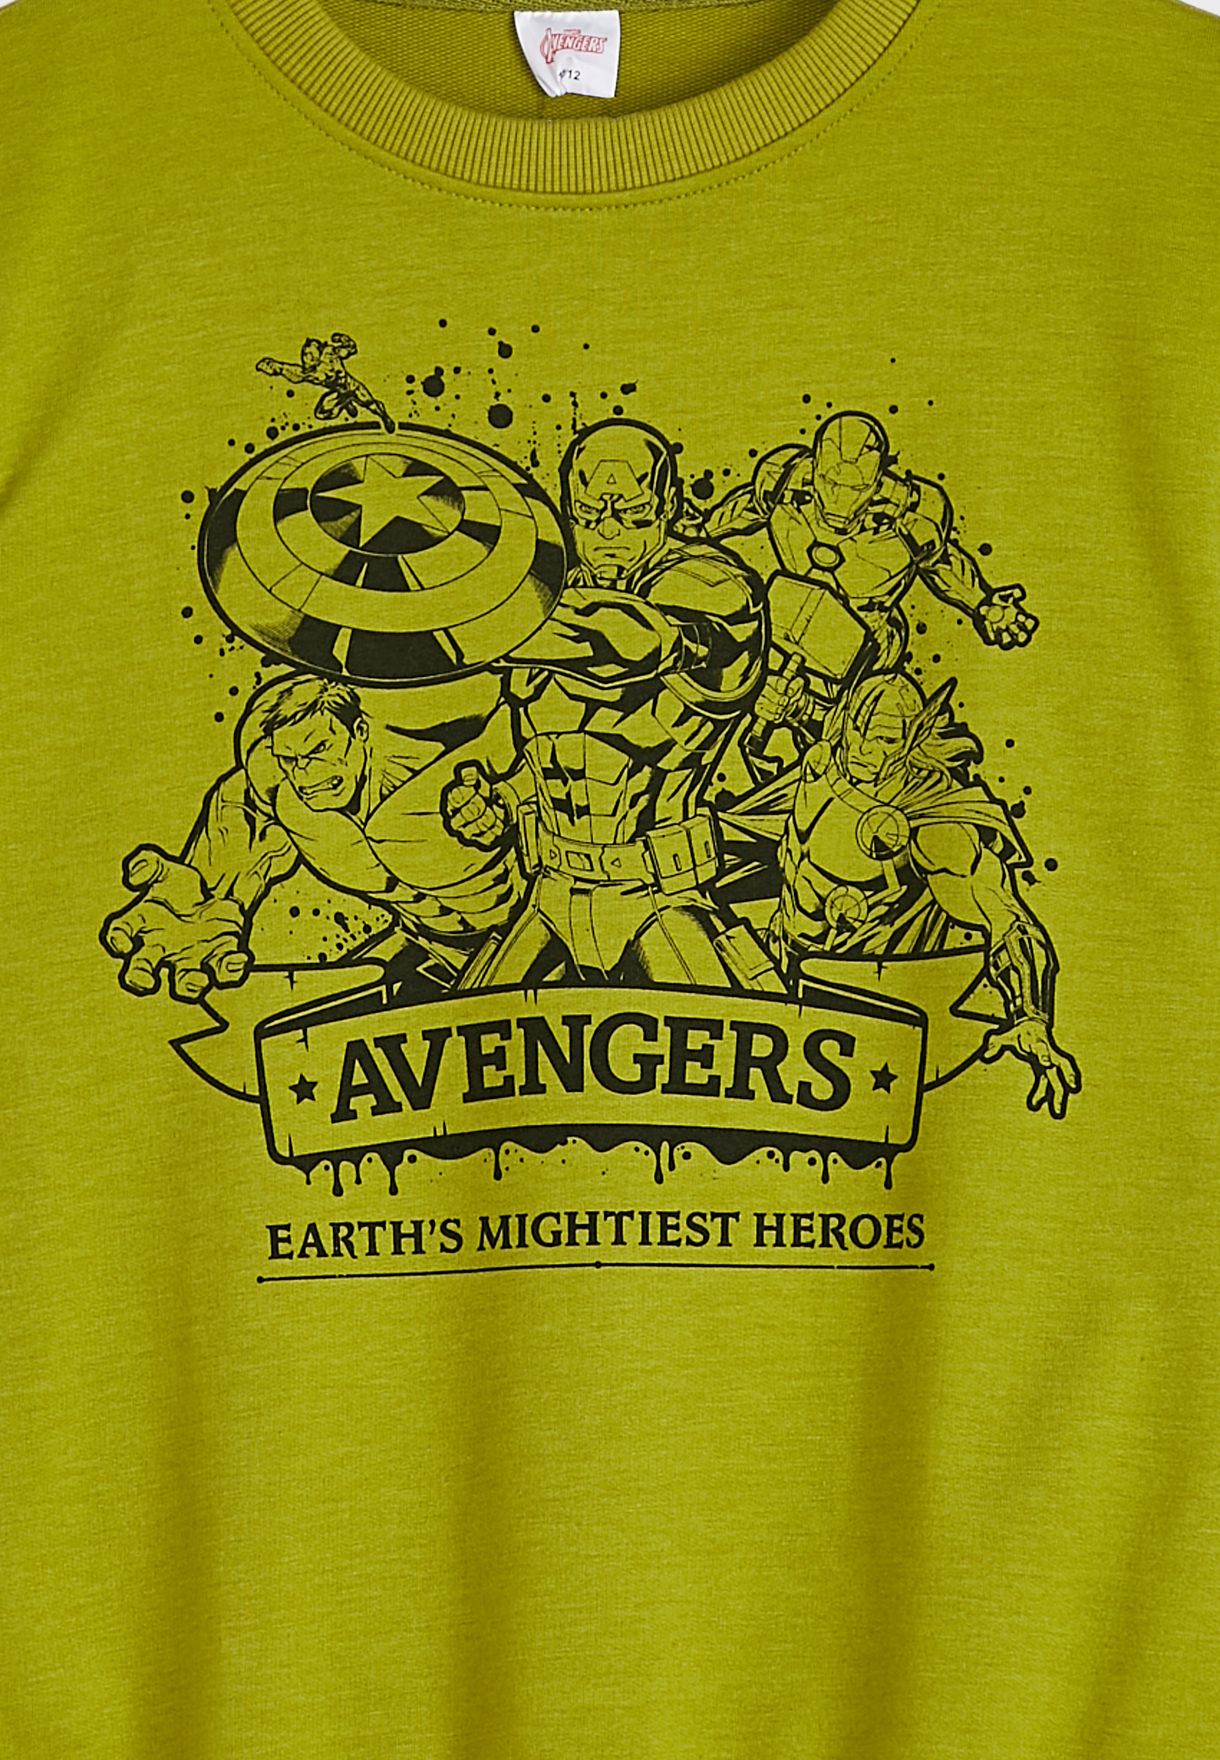 Youth Avengers Sweatshirt